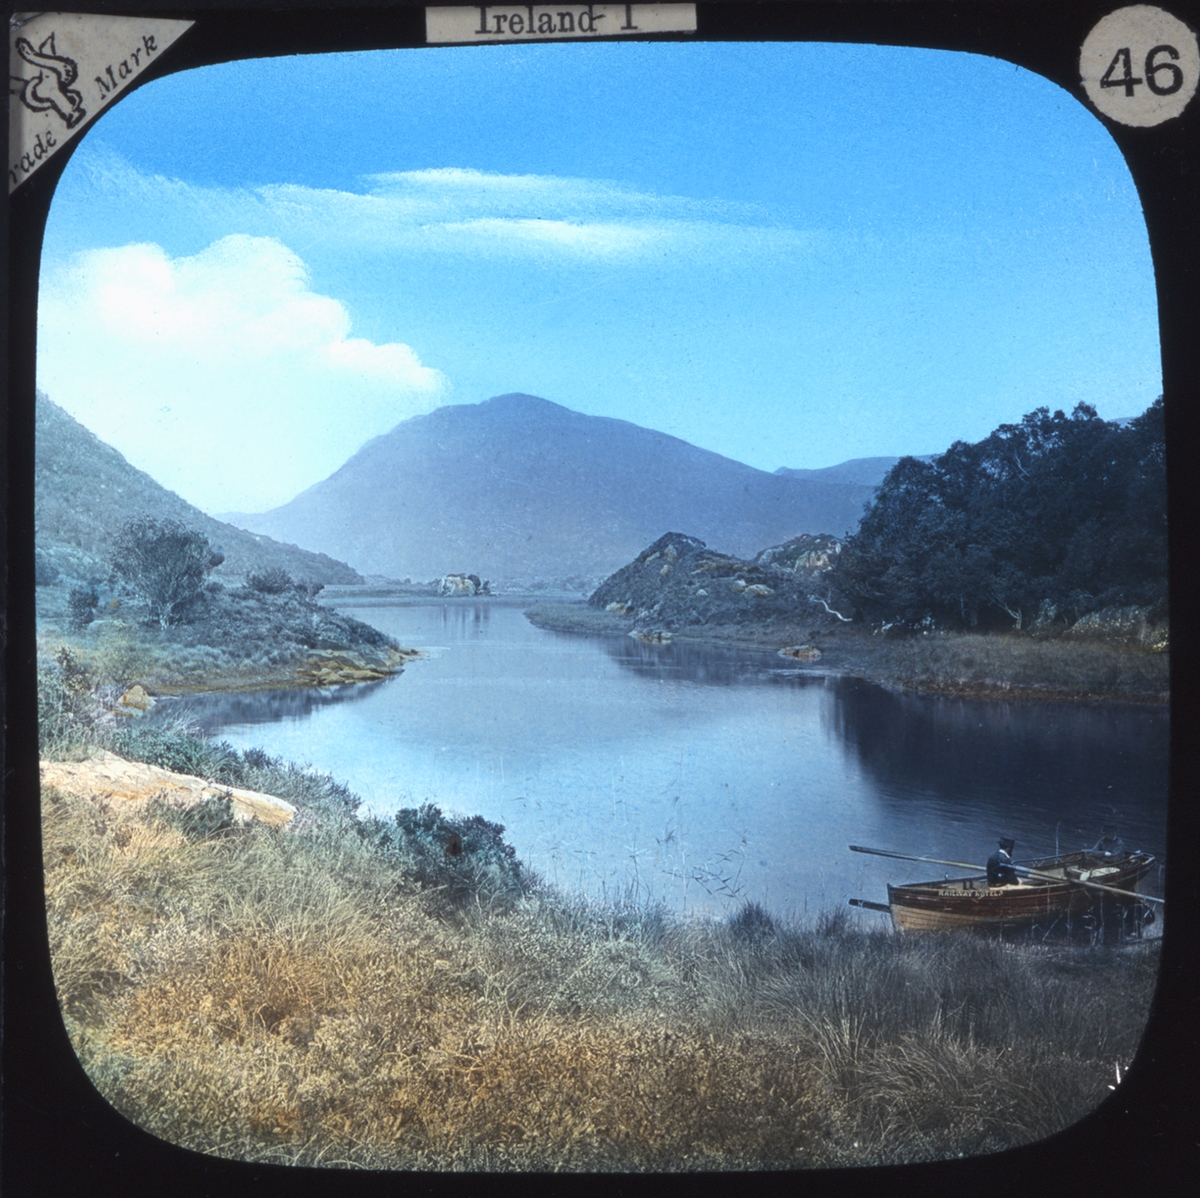 Kolorerade fotografier.
Topografisk vy från Irland, med båt i förgrunden. Ur bildserien "Irland I".